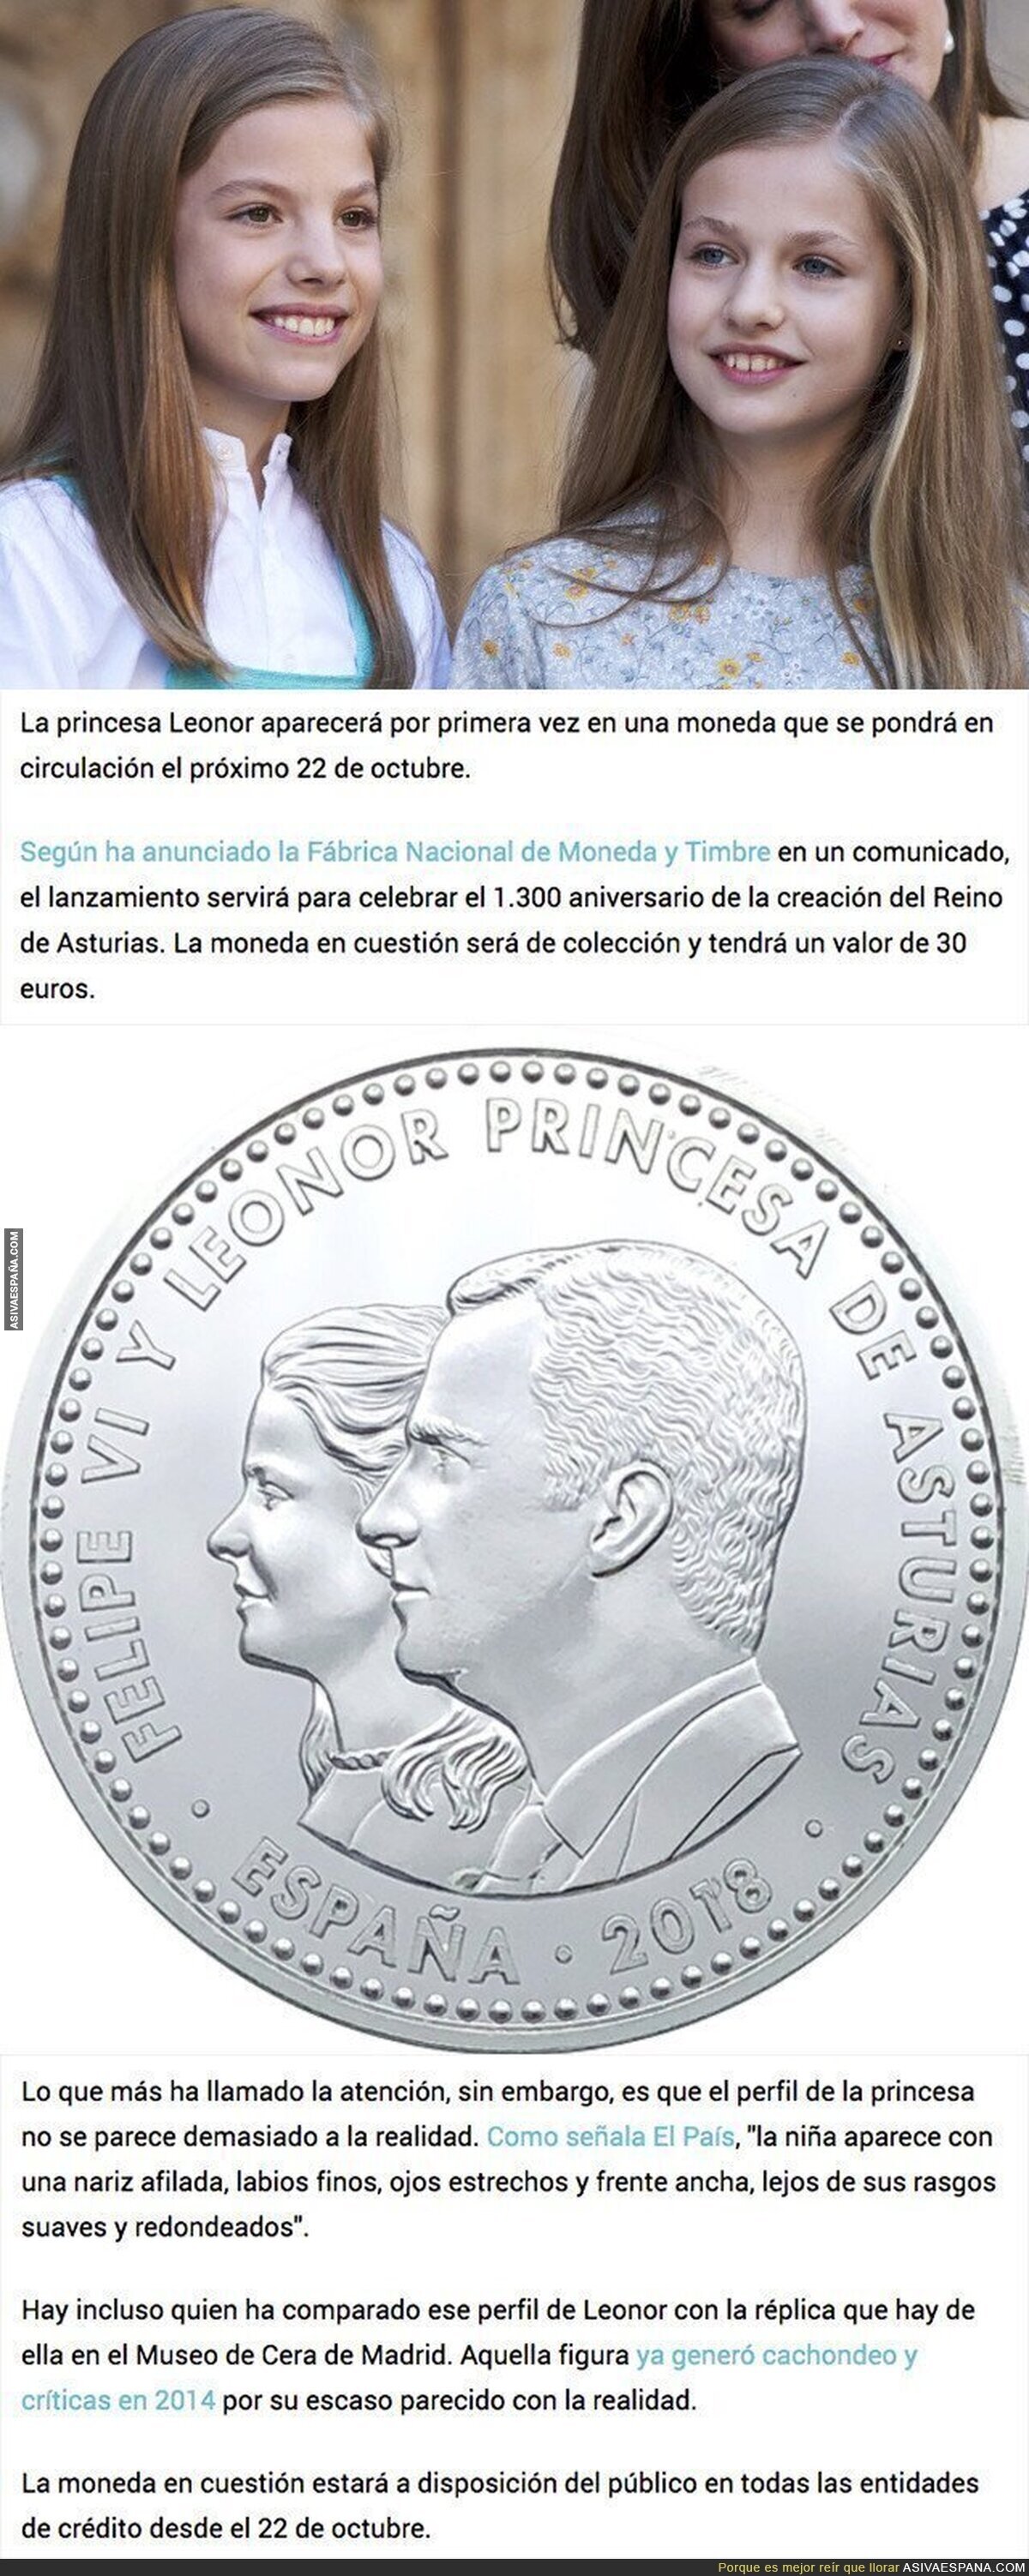 Gran polémica por como se ve Leonor en la moneda que se pondrá en circulación el 22 de octubre